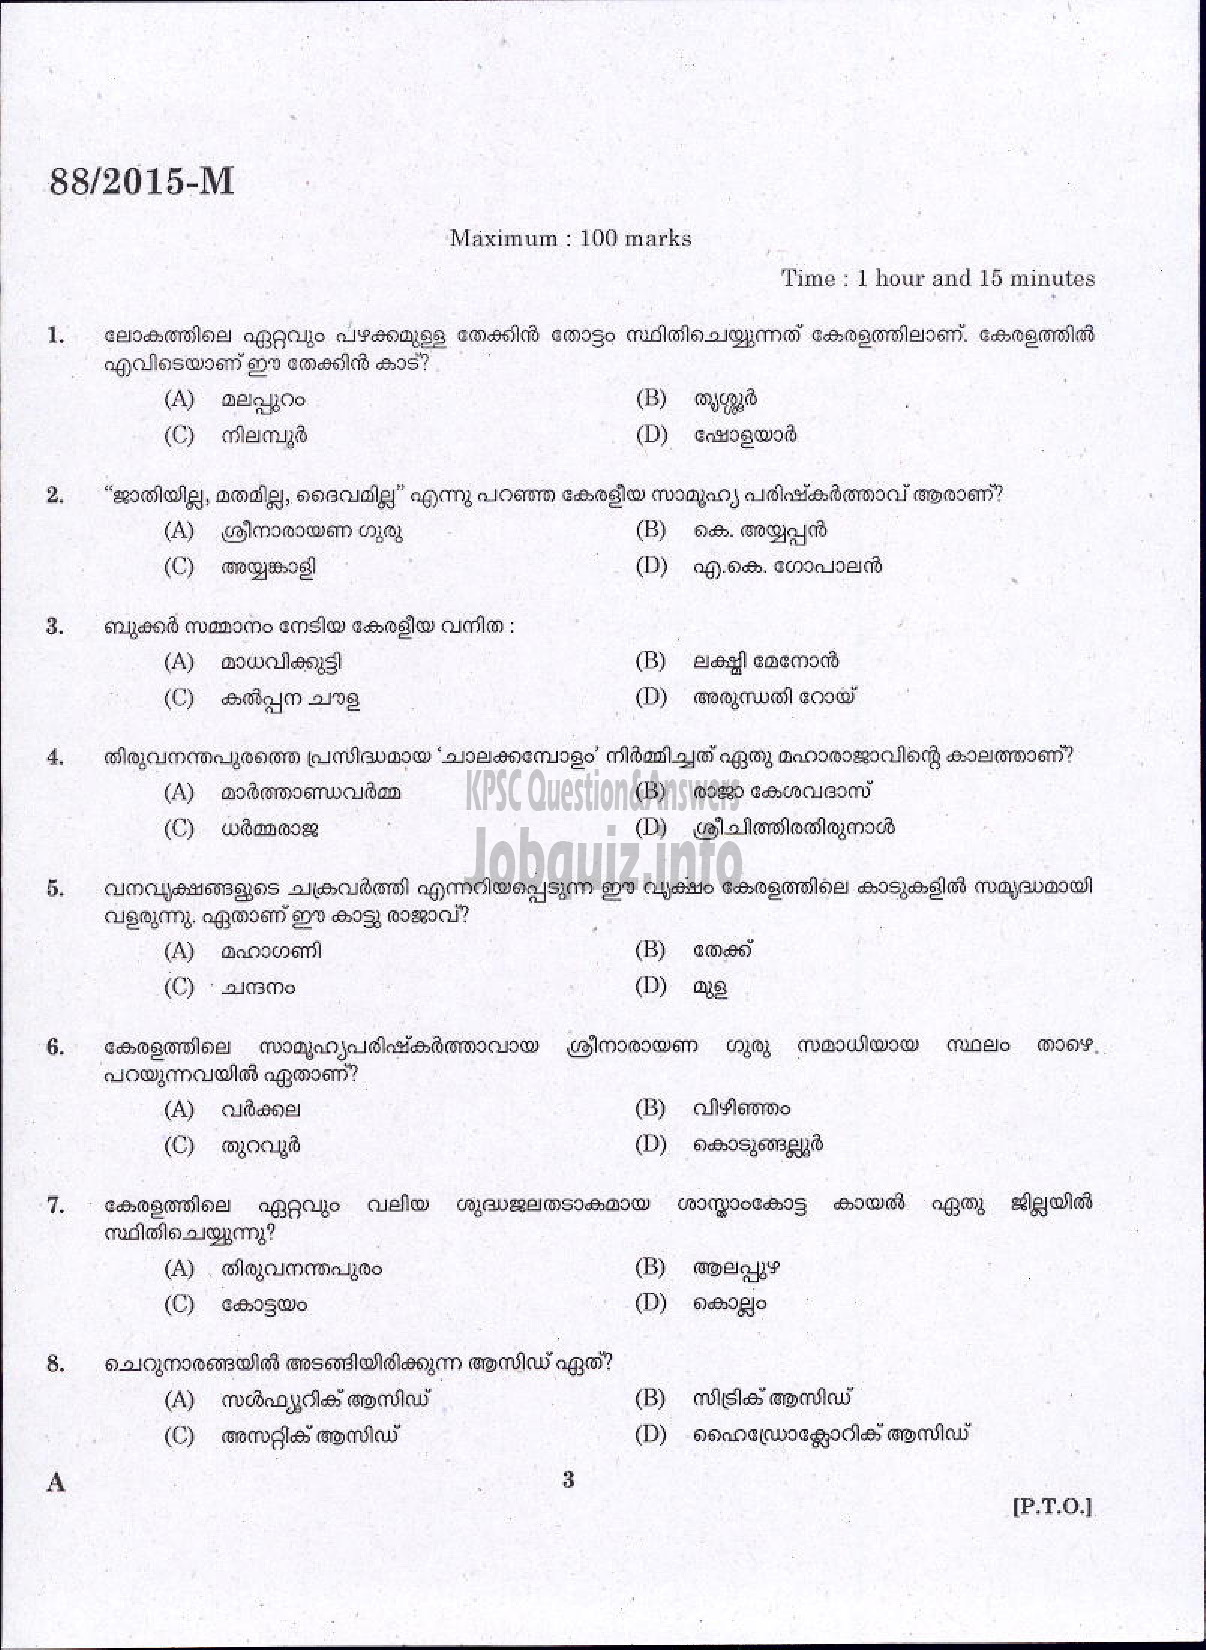 Kerala PSC Question Paper - DRIVER GRADE II LDV VARIOUS / DRIVER GR II / DRIVER LDV VARIOUS COMPANIES / CORPORATIONS-1